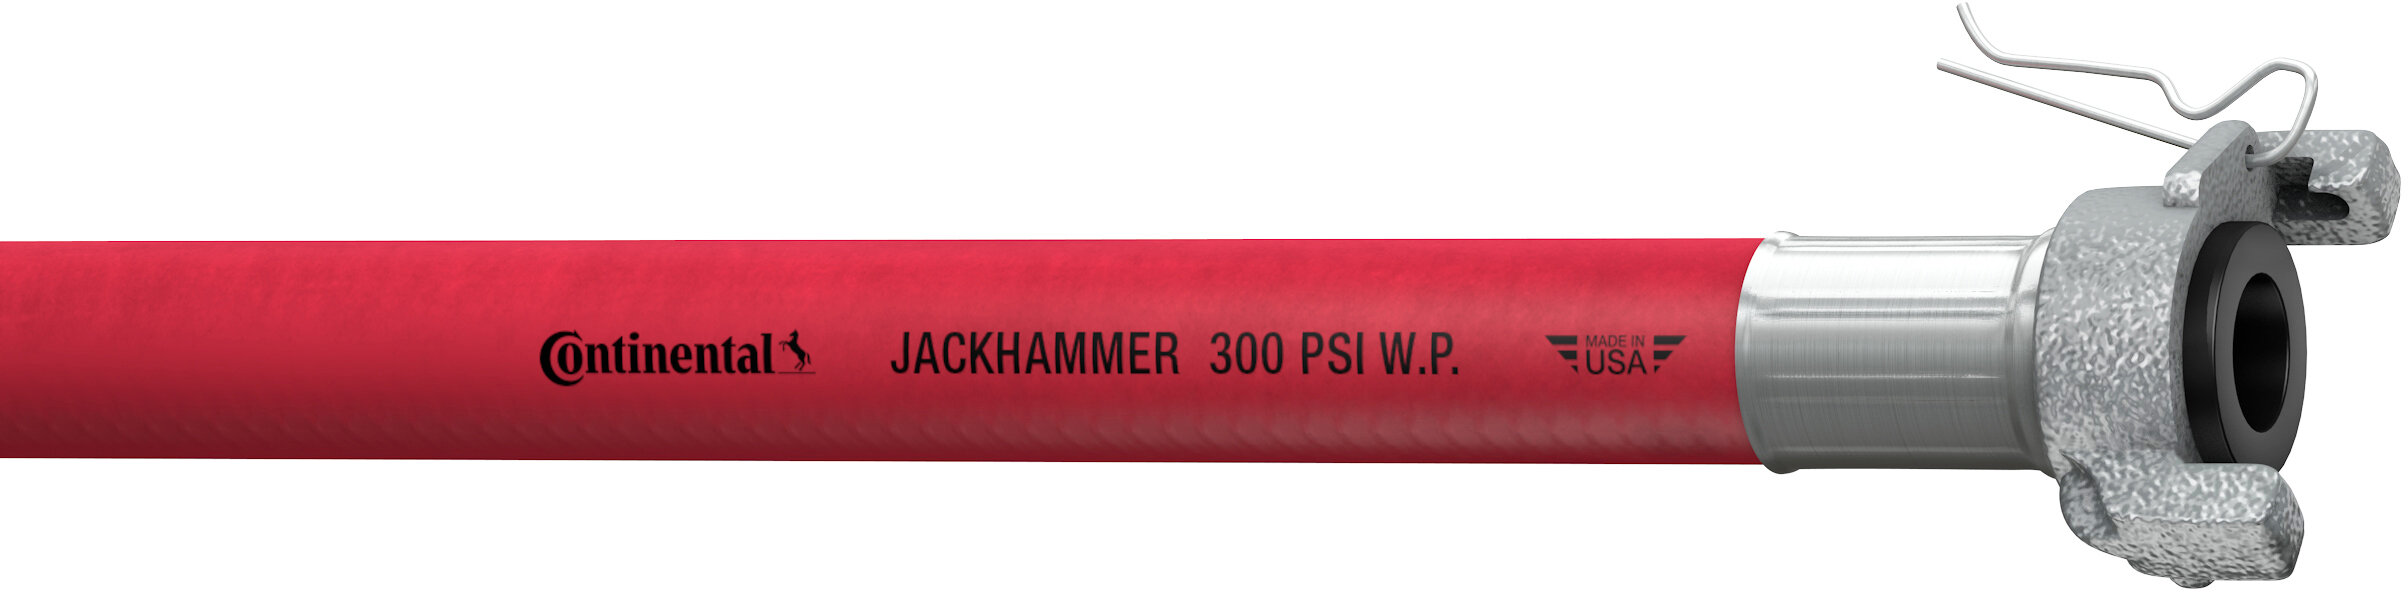 Jackhammer Hose